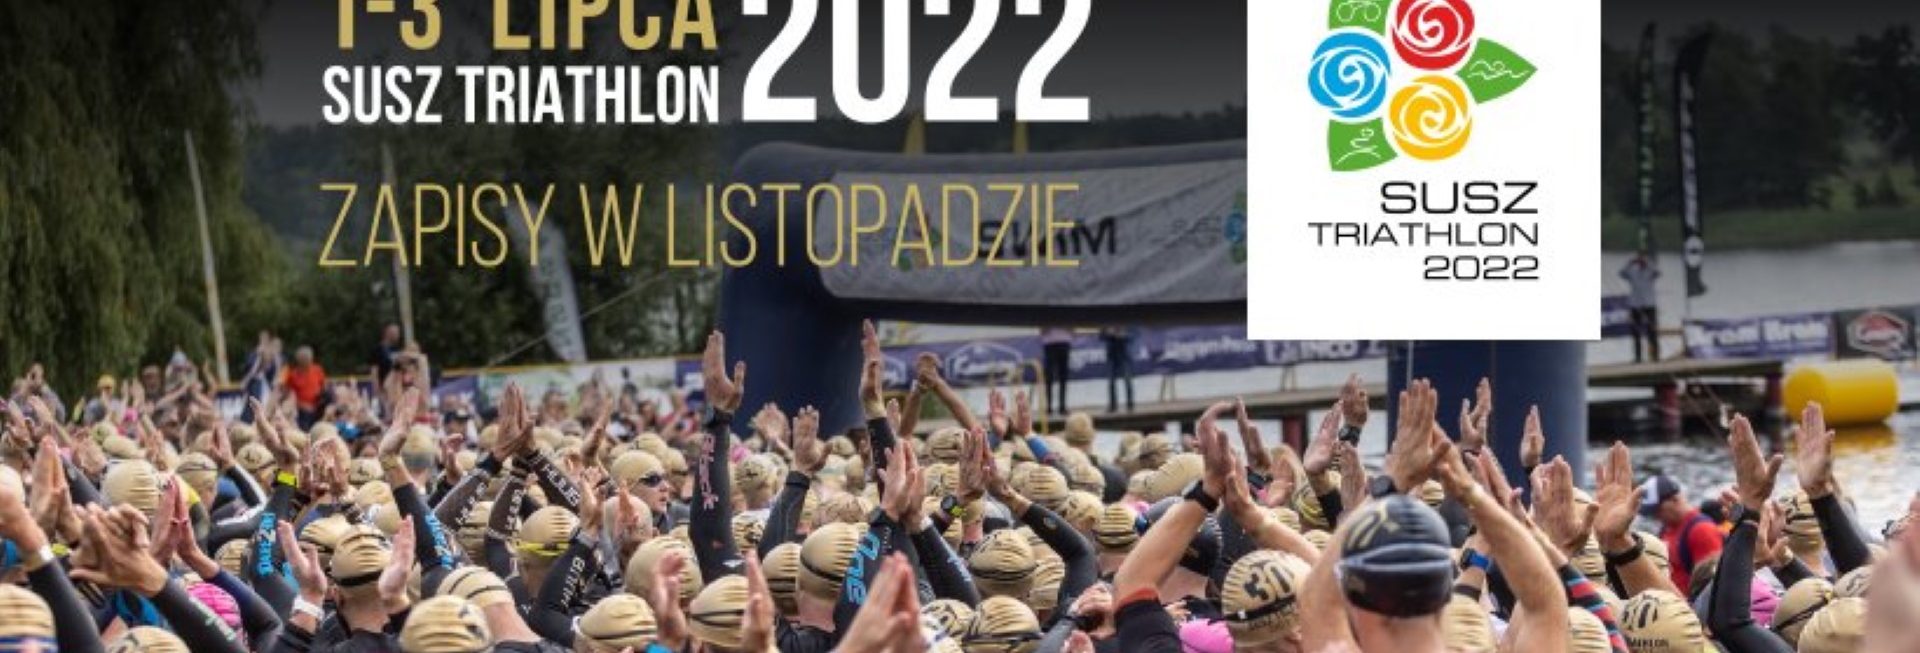 Plakat graficzny zapraszający do miejscowości Susz na kolejną edycję zawodów Susz Triathlon 2022. W Suszu, nieformalnej „stolicy polskiego triathlonu” po raz kolejny odbędą się Mistrzostwa Polski w Triathlonie na dystansie sprinterskim.